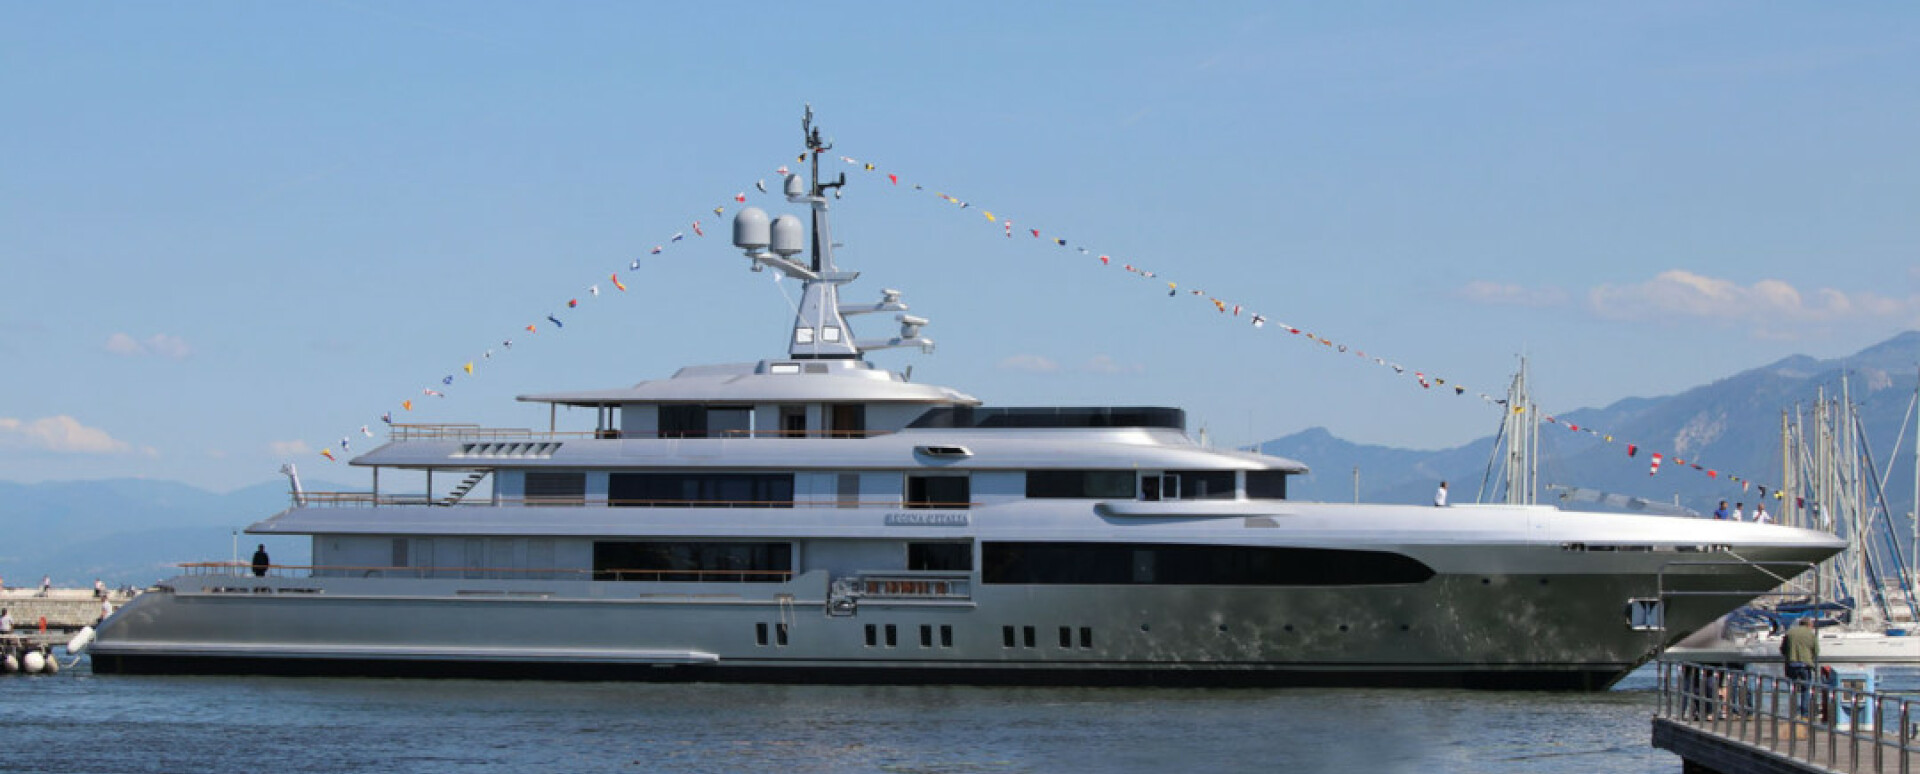 regina d'italia yacht rental price